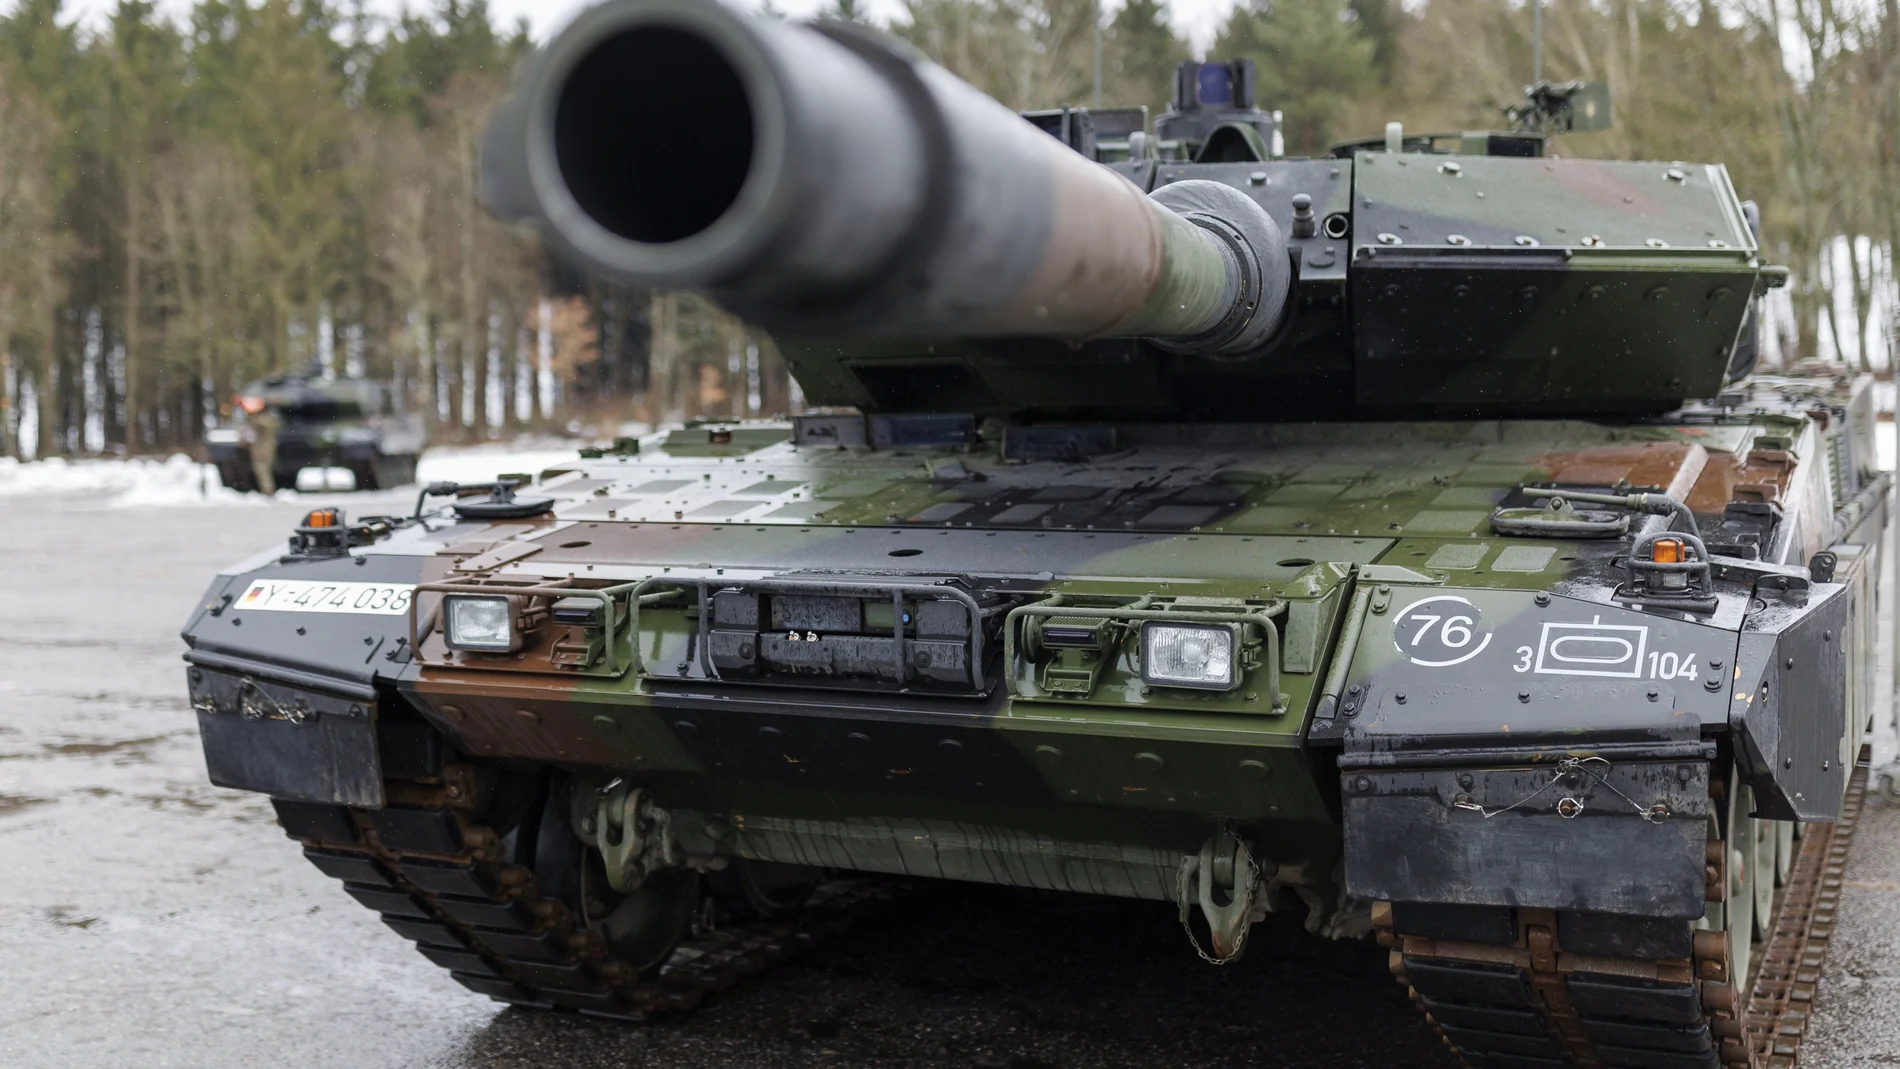 El nuevo modelo del Leopard 2 A7V del Ejército alemán durante una ceremonia en Pfreimd, Alemania